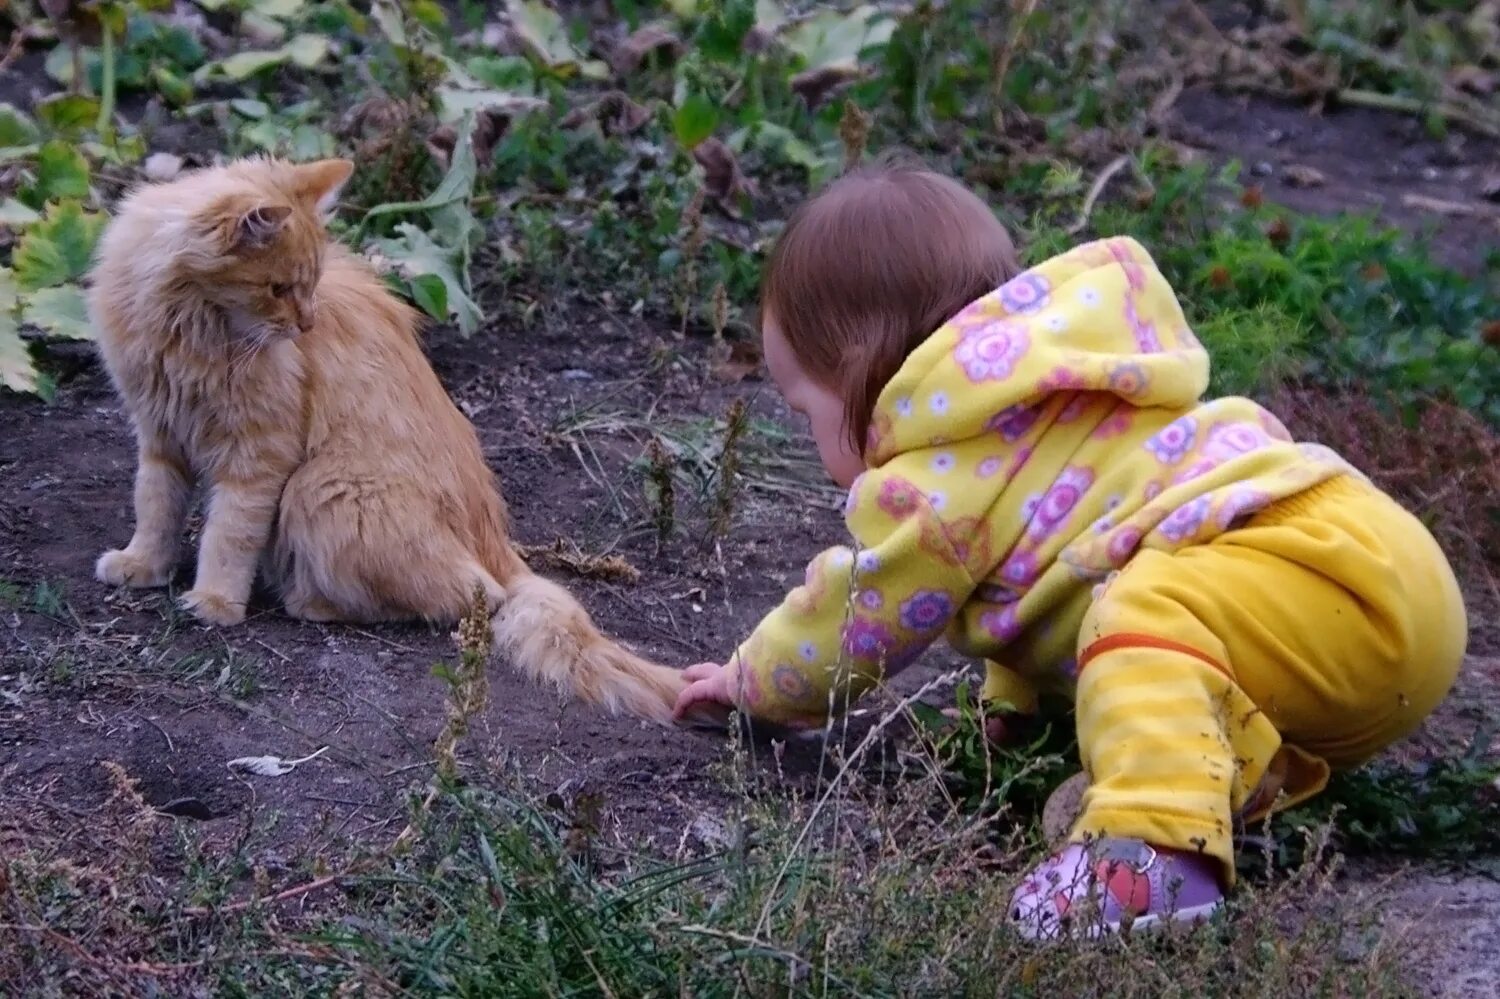 Кота за хвост. Кота тащат за хвост. Ребенок тащит кота за хвост. Дергать кошку за хвост.